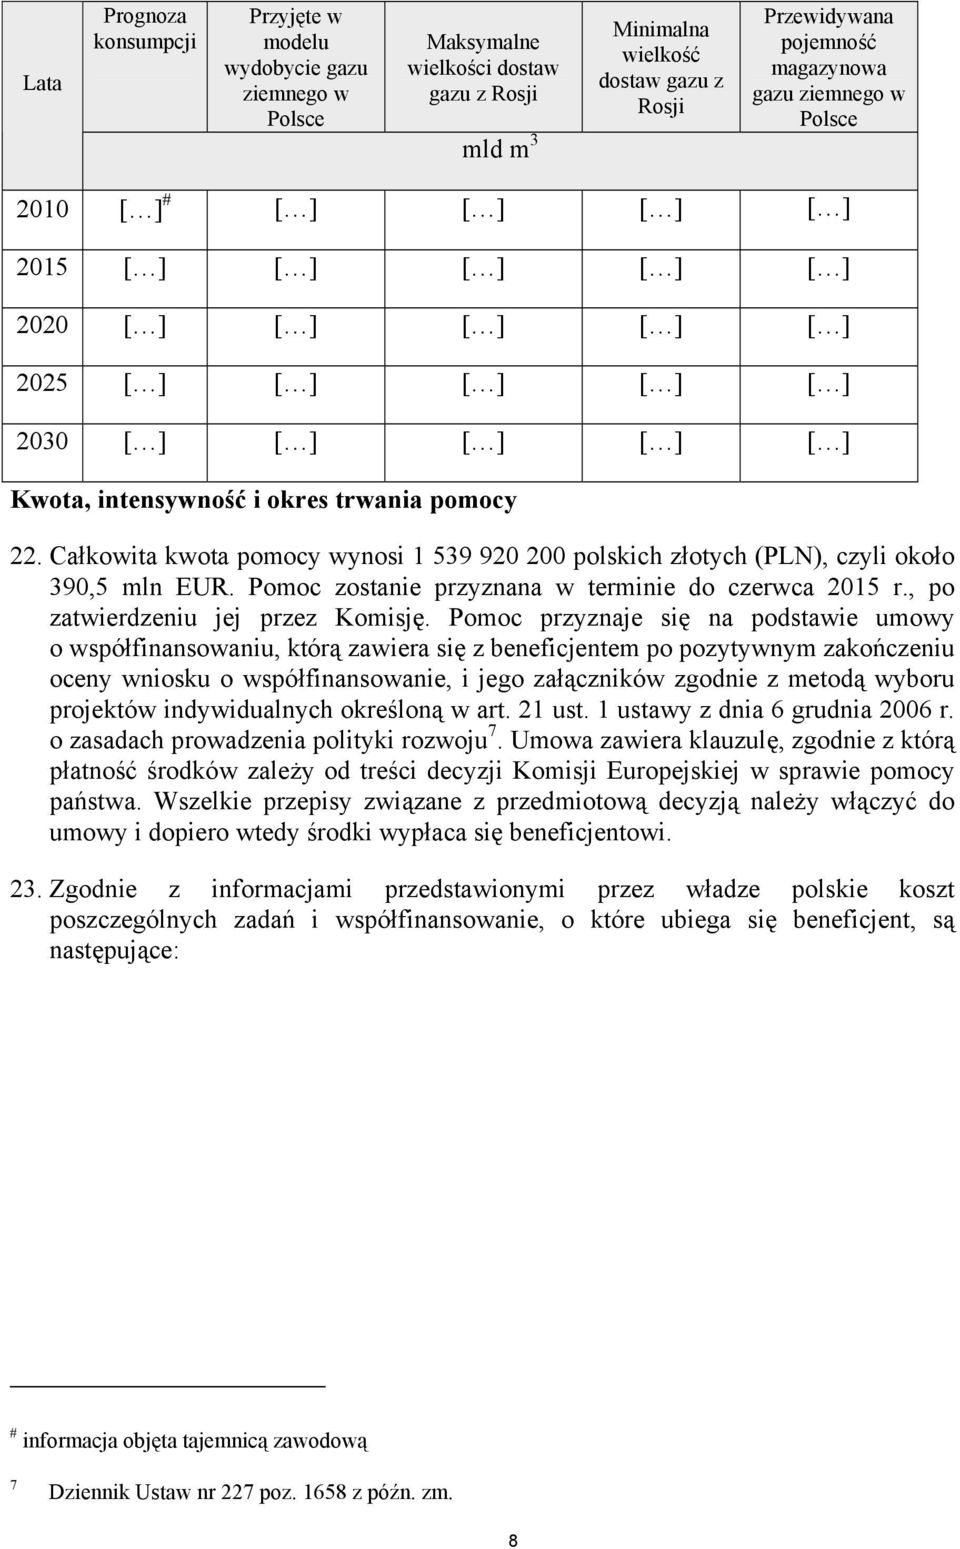 Całkowita kwota pomocy wynosi 1 539 920 200 polskich złotych (PLN), czyli około 390,5 mln EUR. Pomoc zostanie przyznana w terminie do czerwca 2015 r., po zatwierdzeniu jej przez Komisję.